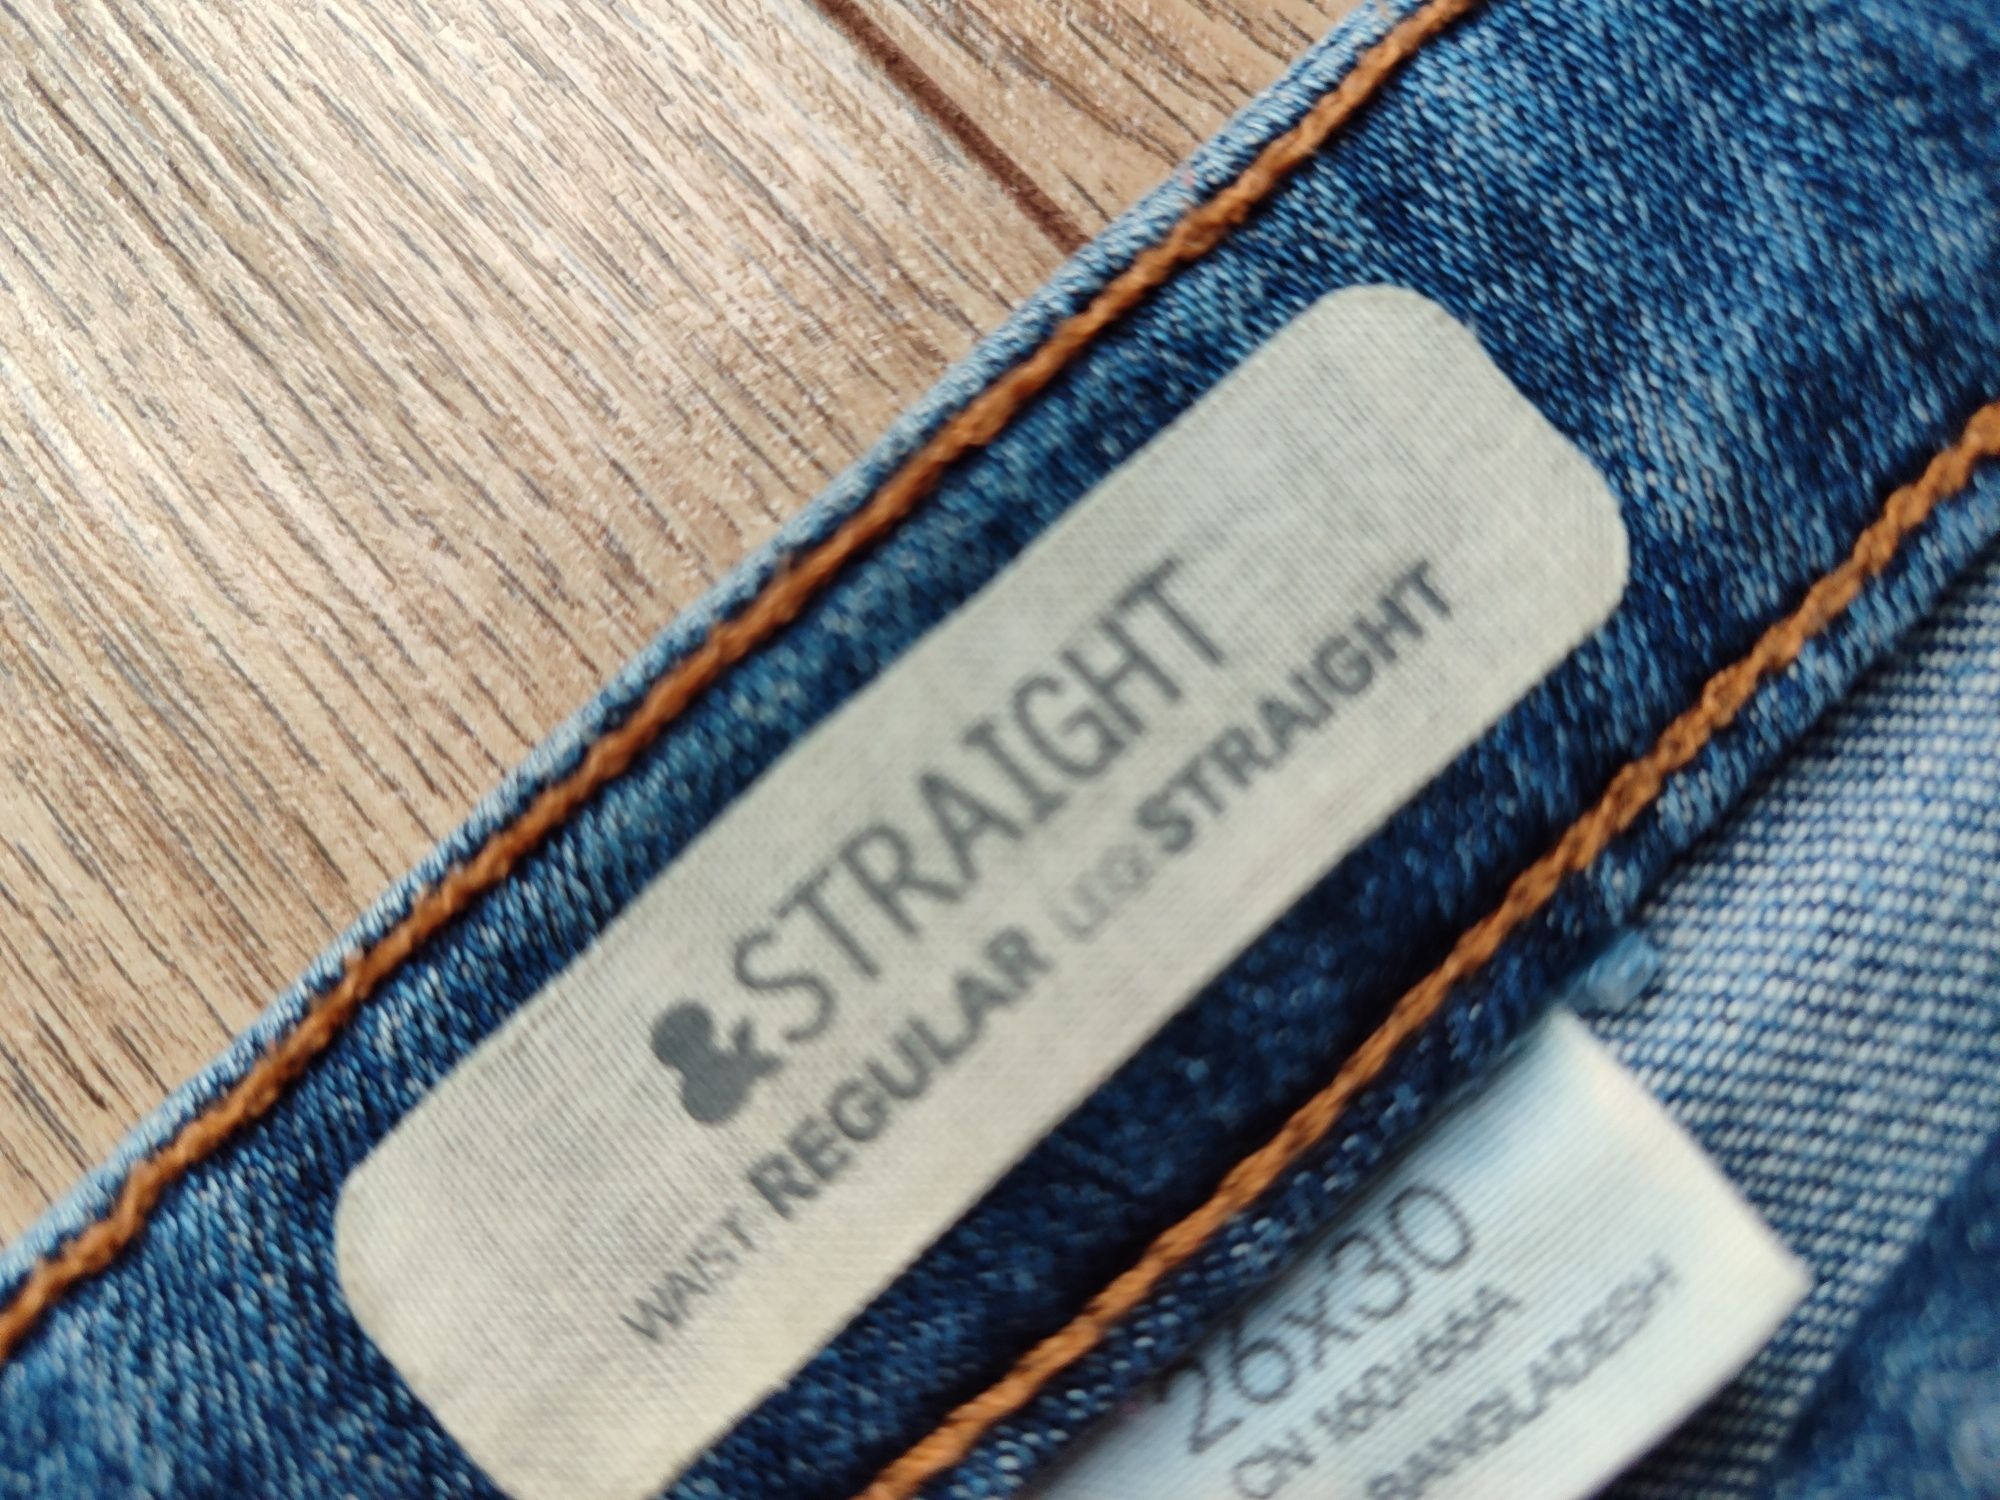 Krótkie jeansowe spodenki S 36 regular straight 26 x 30